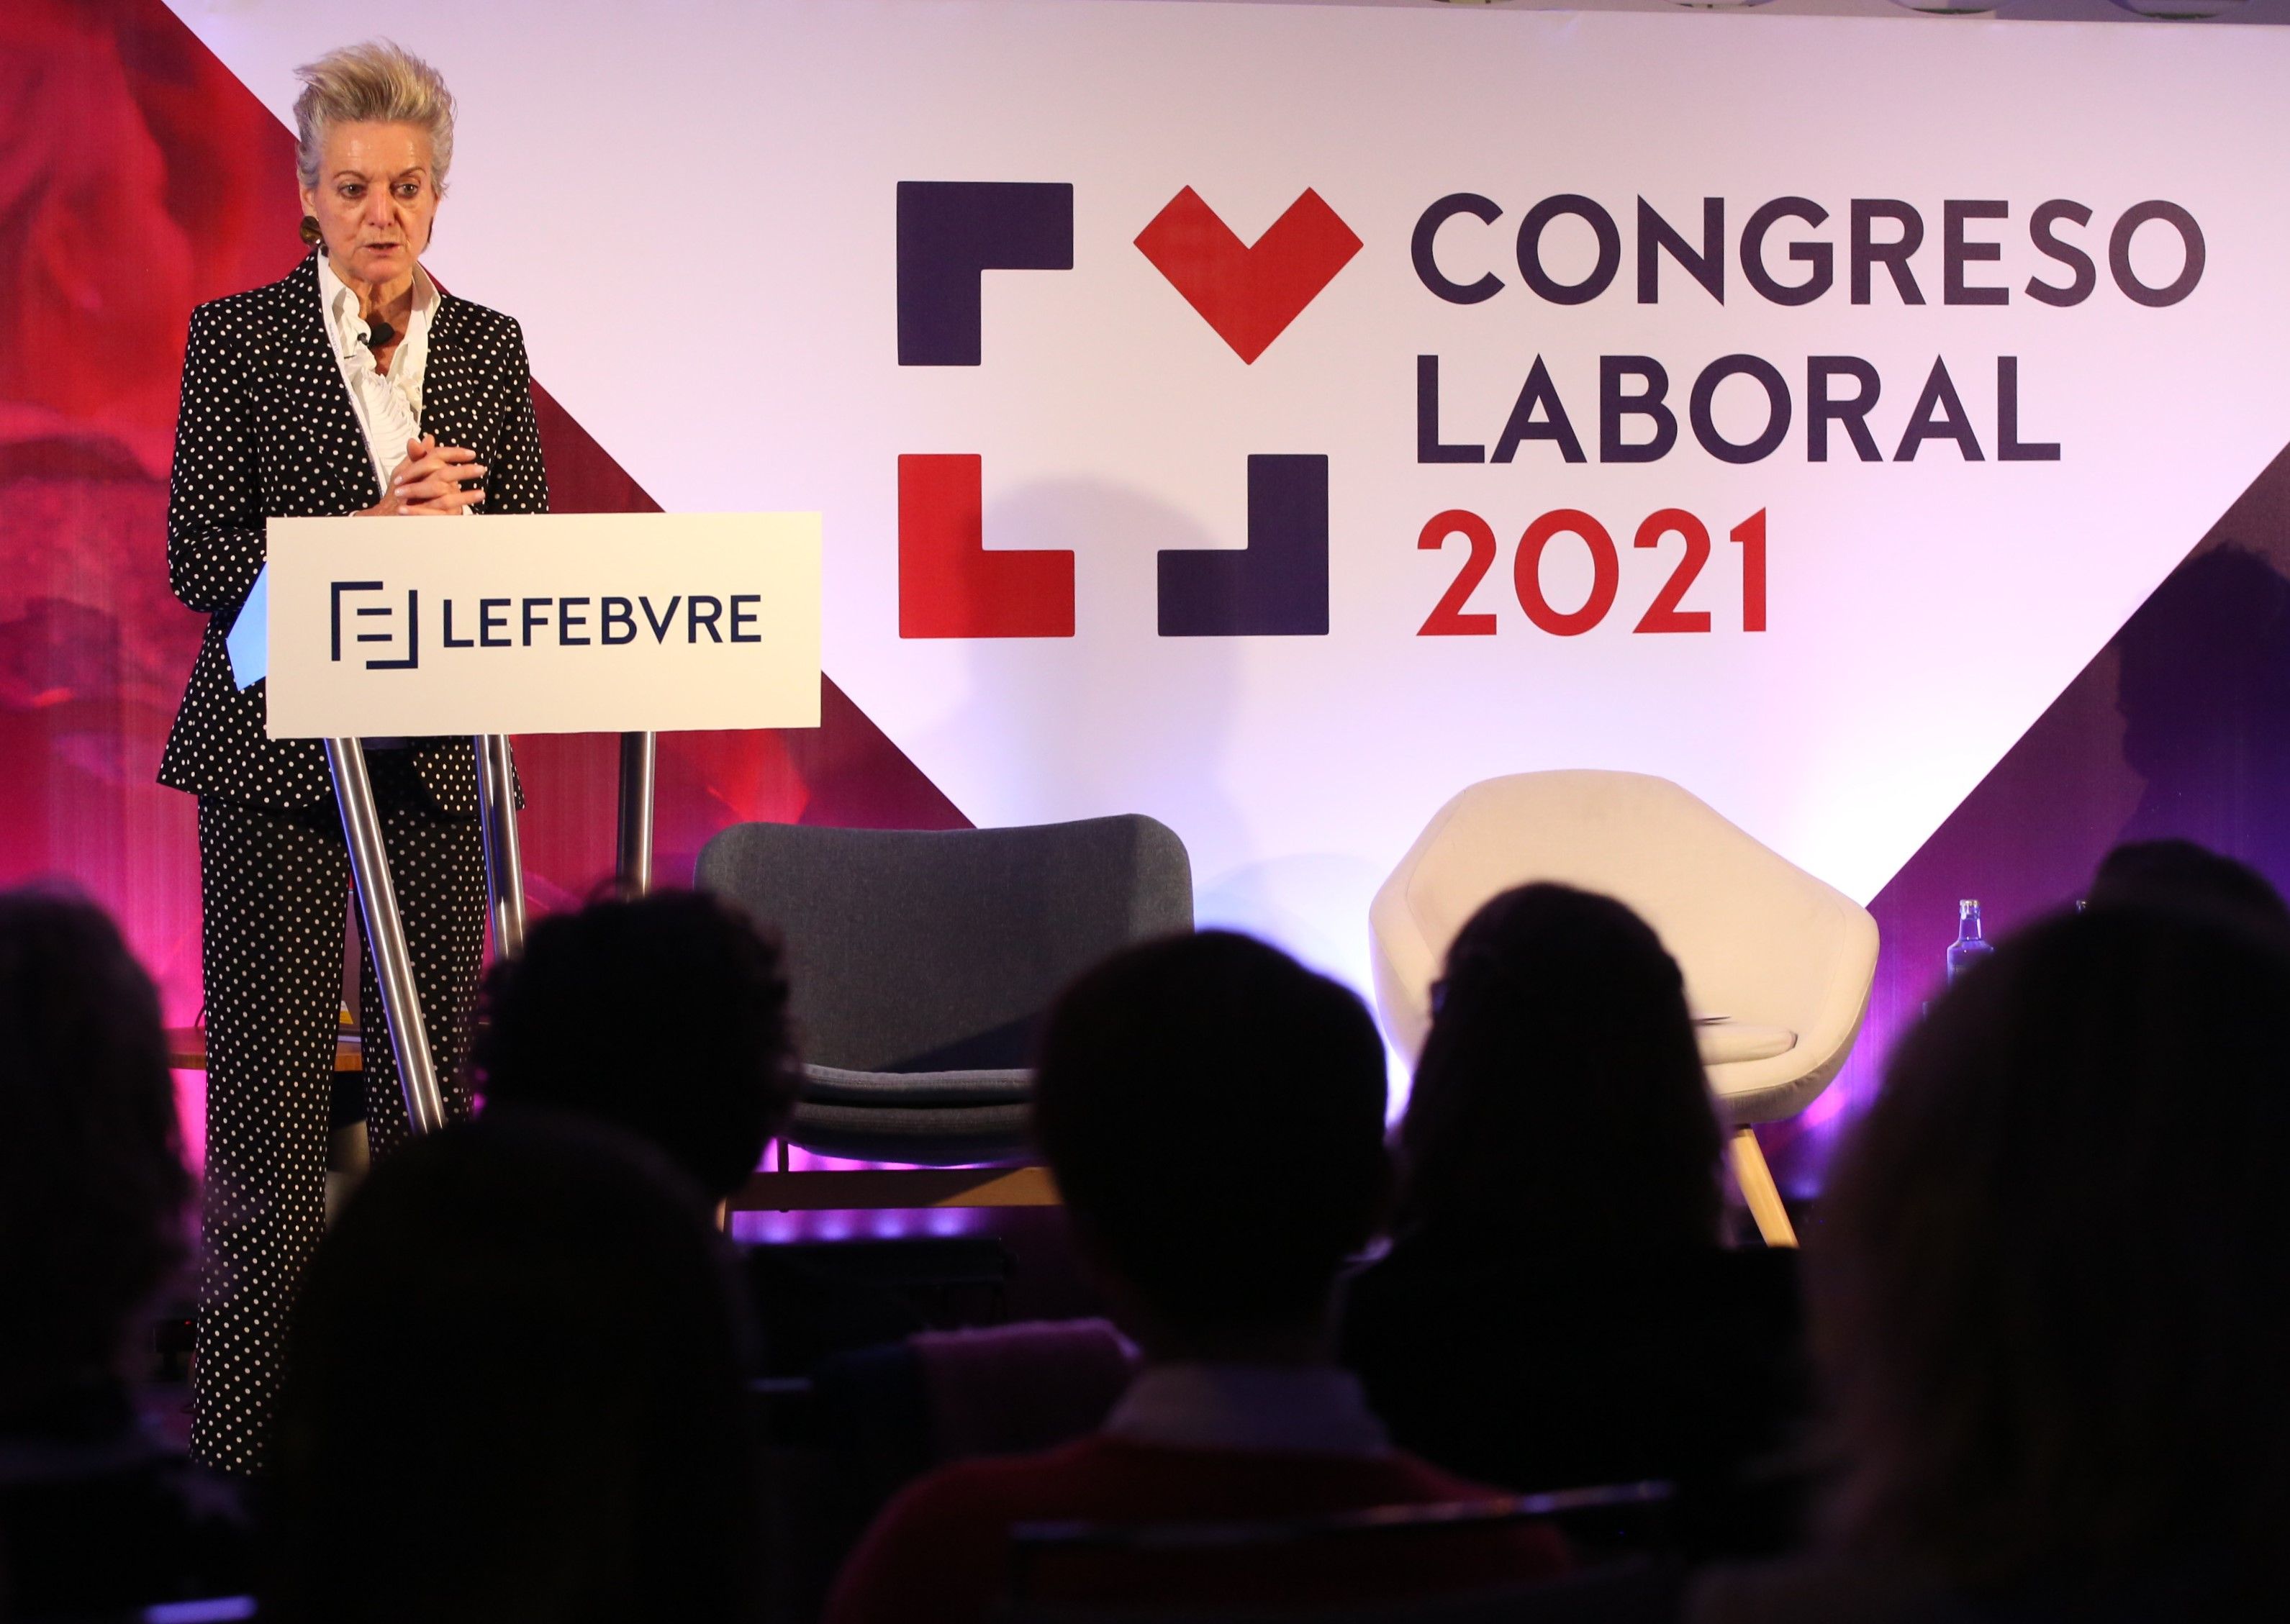 Los expertos abordan la reforma laboral en el Congreso Laboral 2021 organizado por Lefebvre